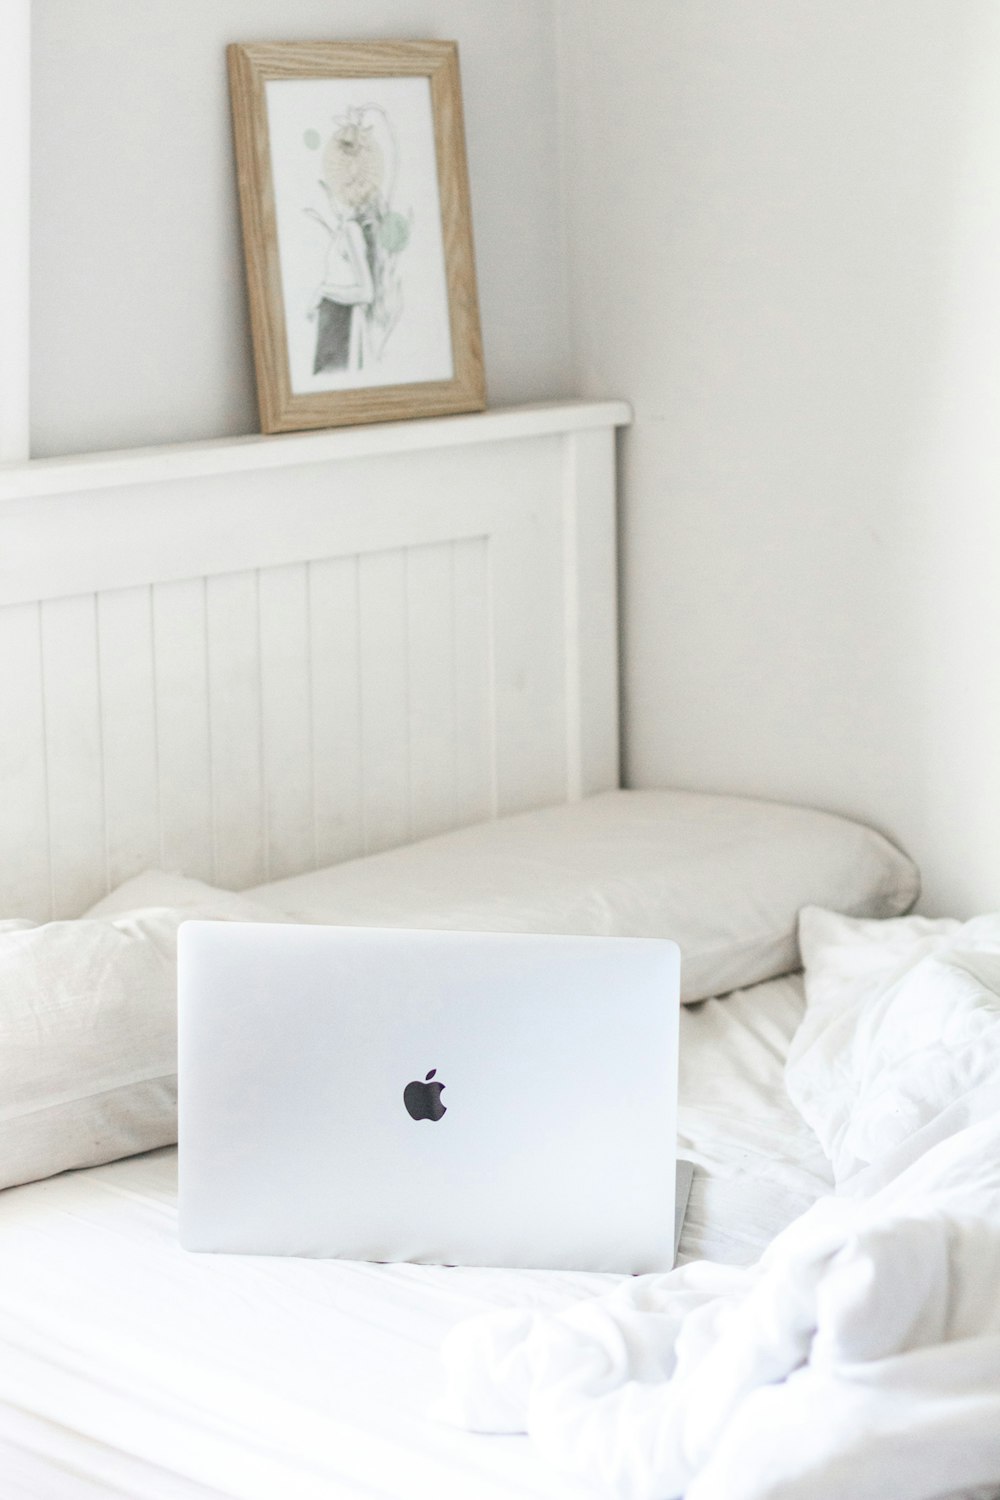 MacBook plateado sobre cama blanca